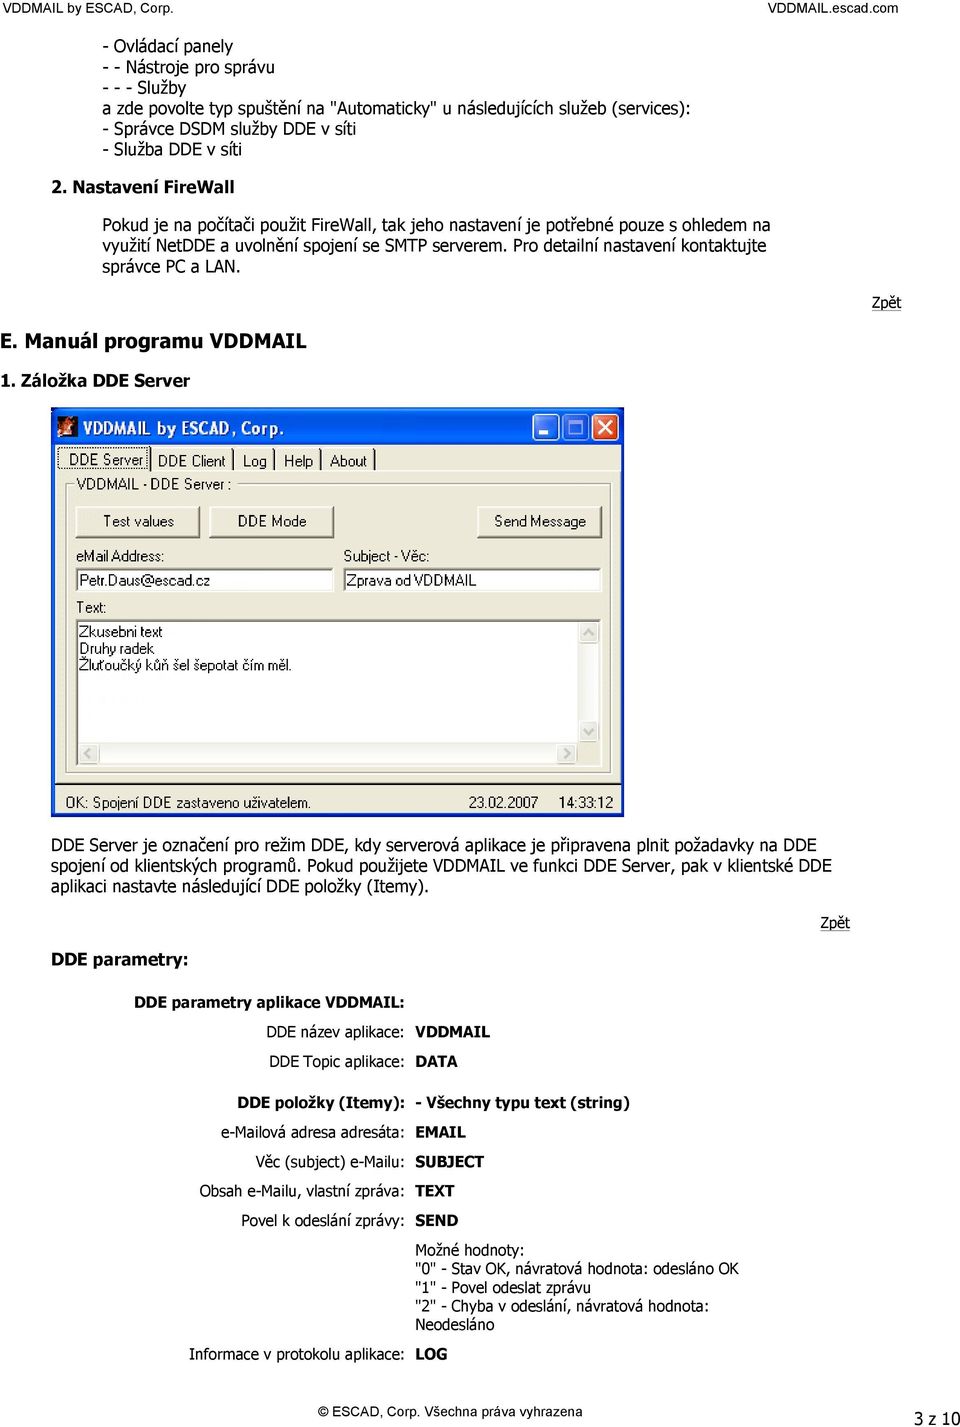 Pro detailní nastavení kontaktujte správce PC a LAN. E. Manuál programu VDDMAIL 1.